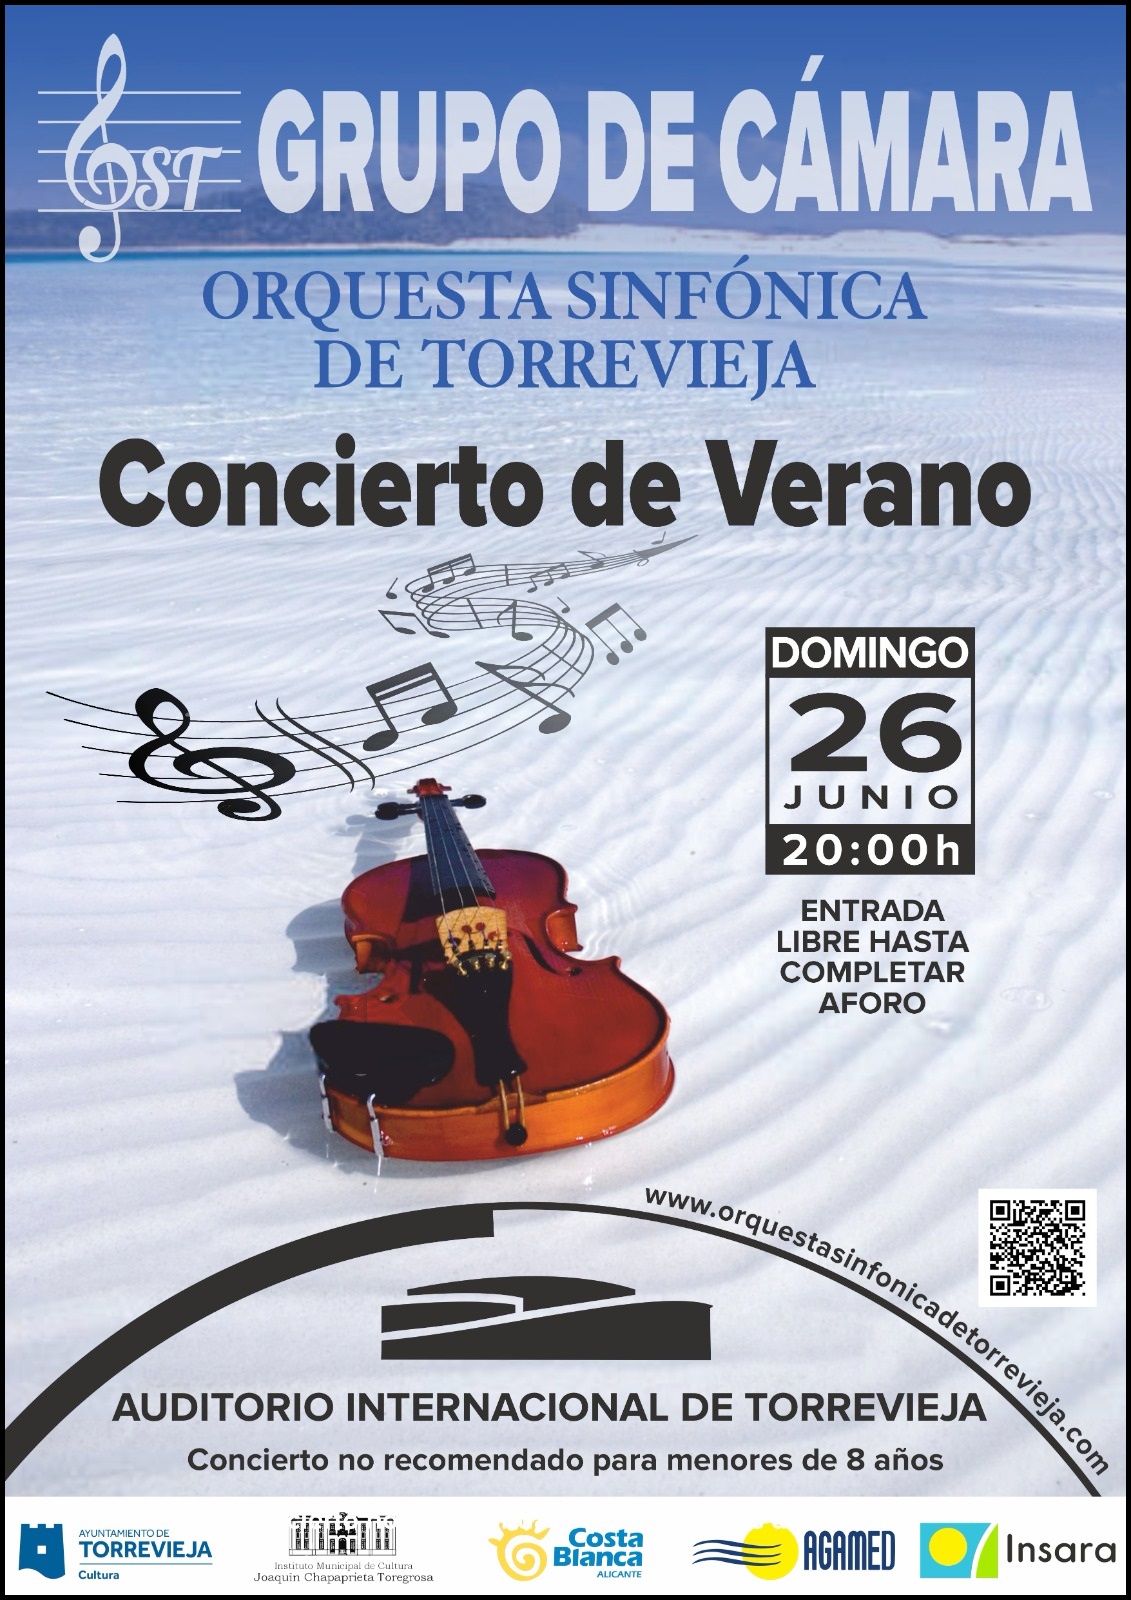 Concierto de verano. Grupo de cámara del Orquesta Sinfónica de Torrevieja. Mañana a las 20:00 horas en el Auditorio Internacional